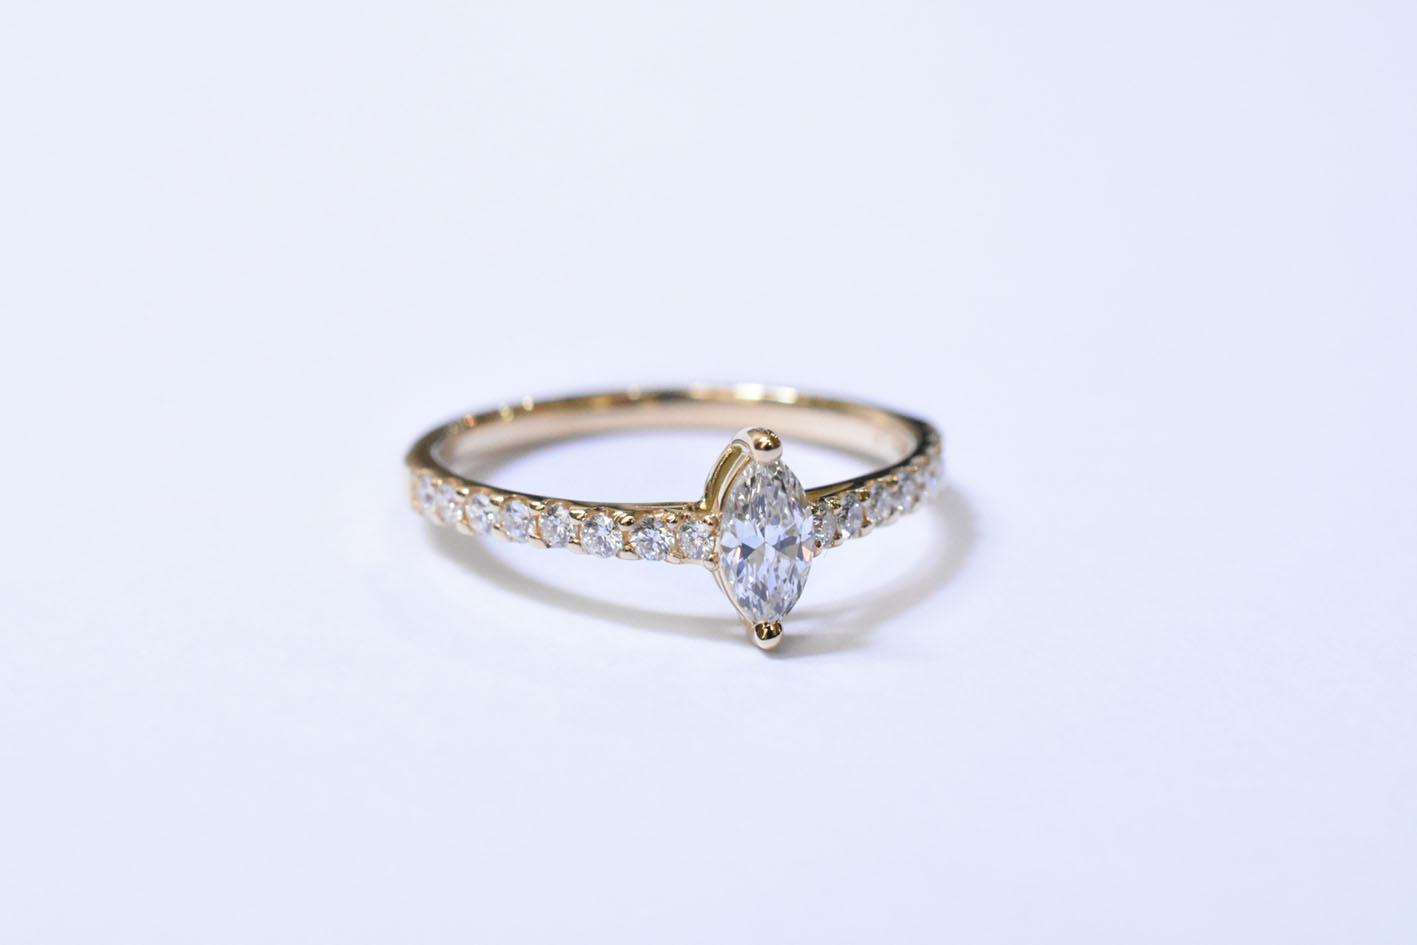 K18YG / Marquise Cut Diamond Ring 0.212ct / D / VVS-1